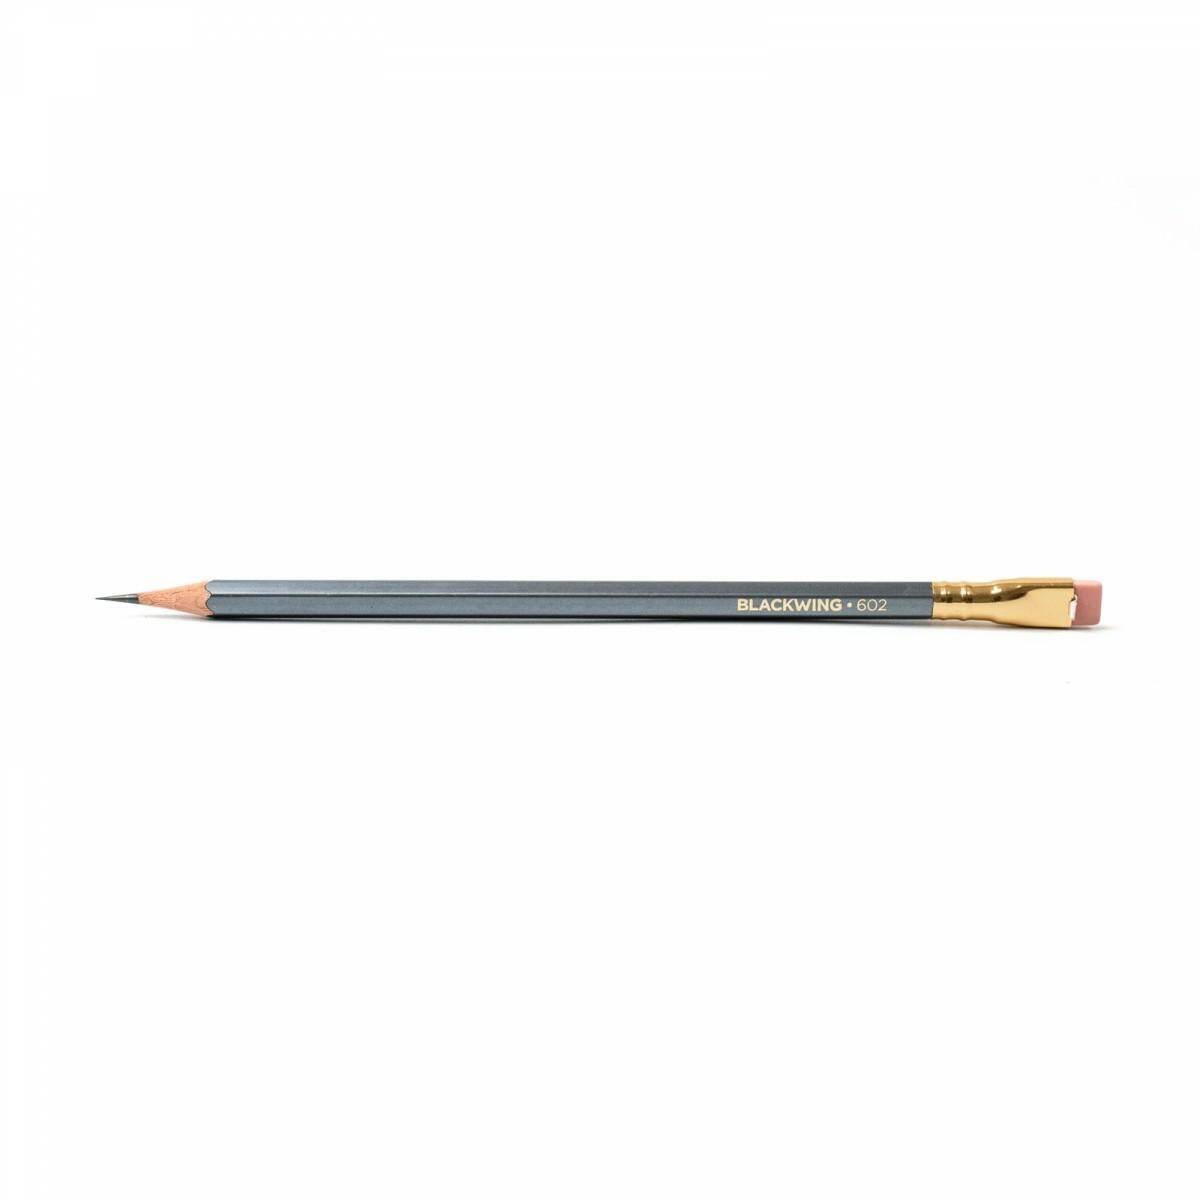 Ołówek z gumką BLACKWING 602.